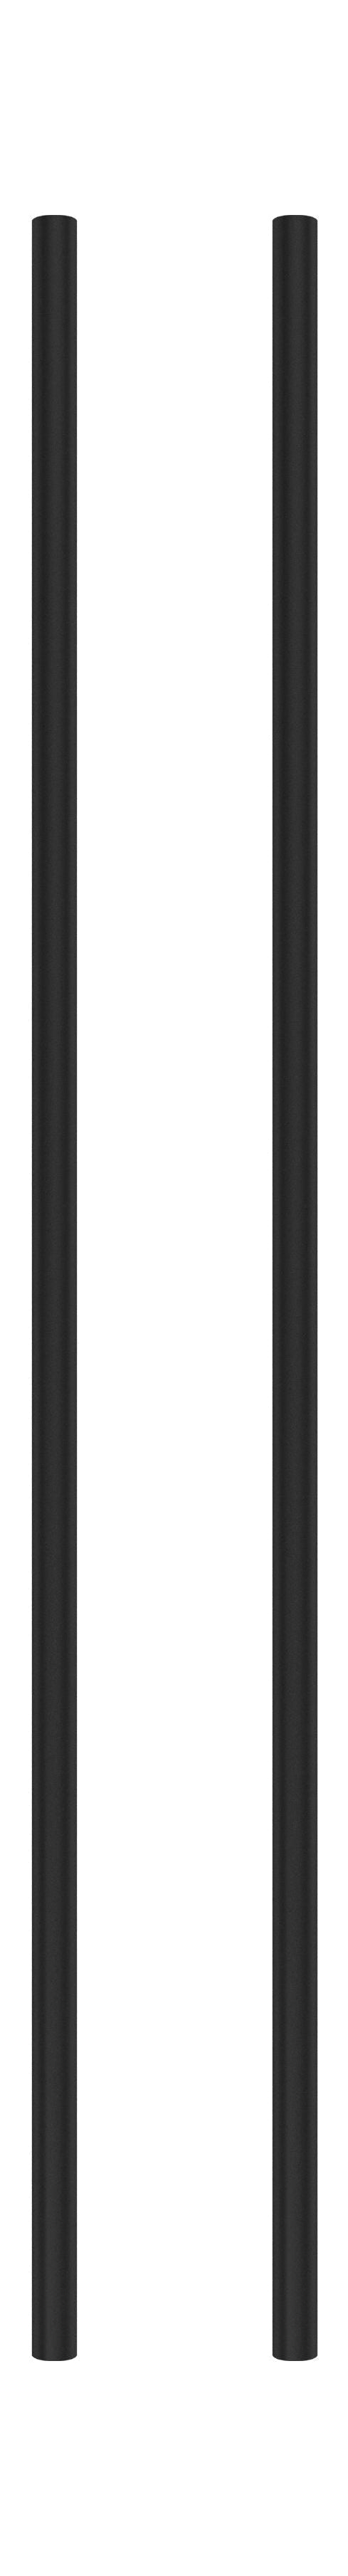 Moebe hyller system/vegghyller 85 cm svart, sett med 2